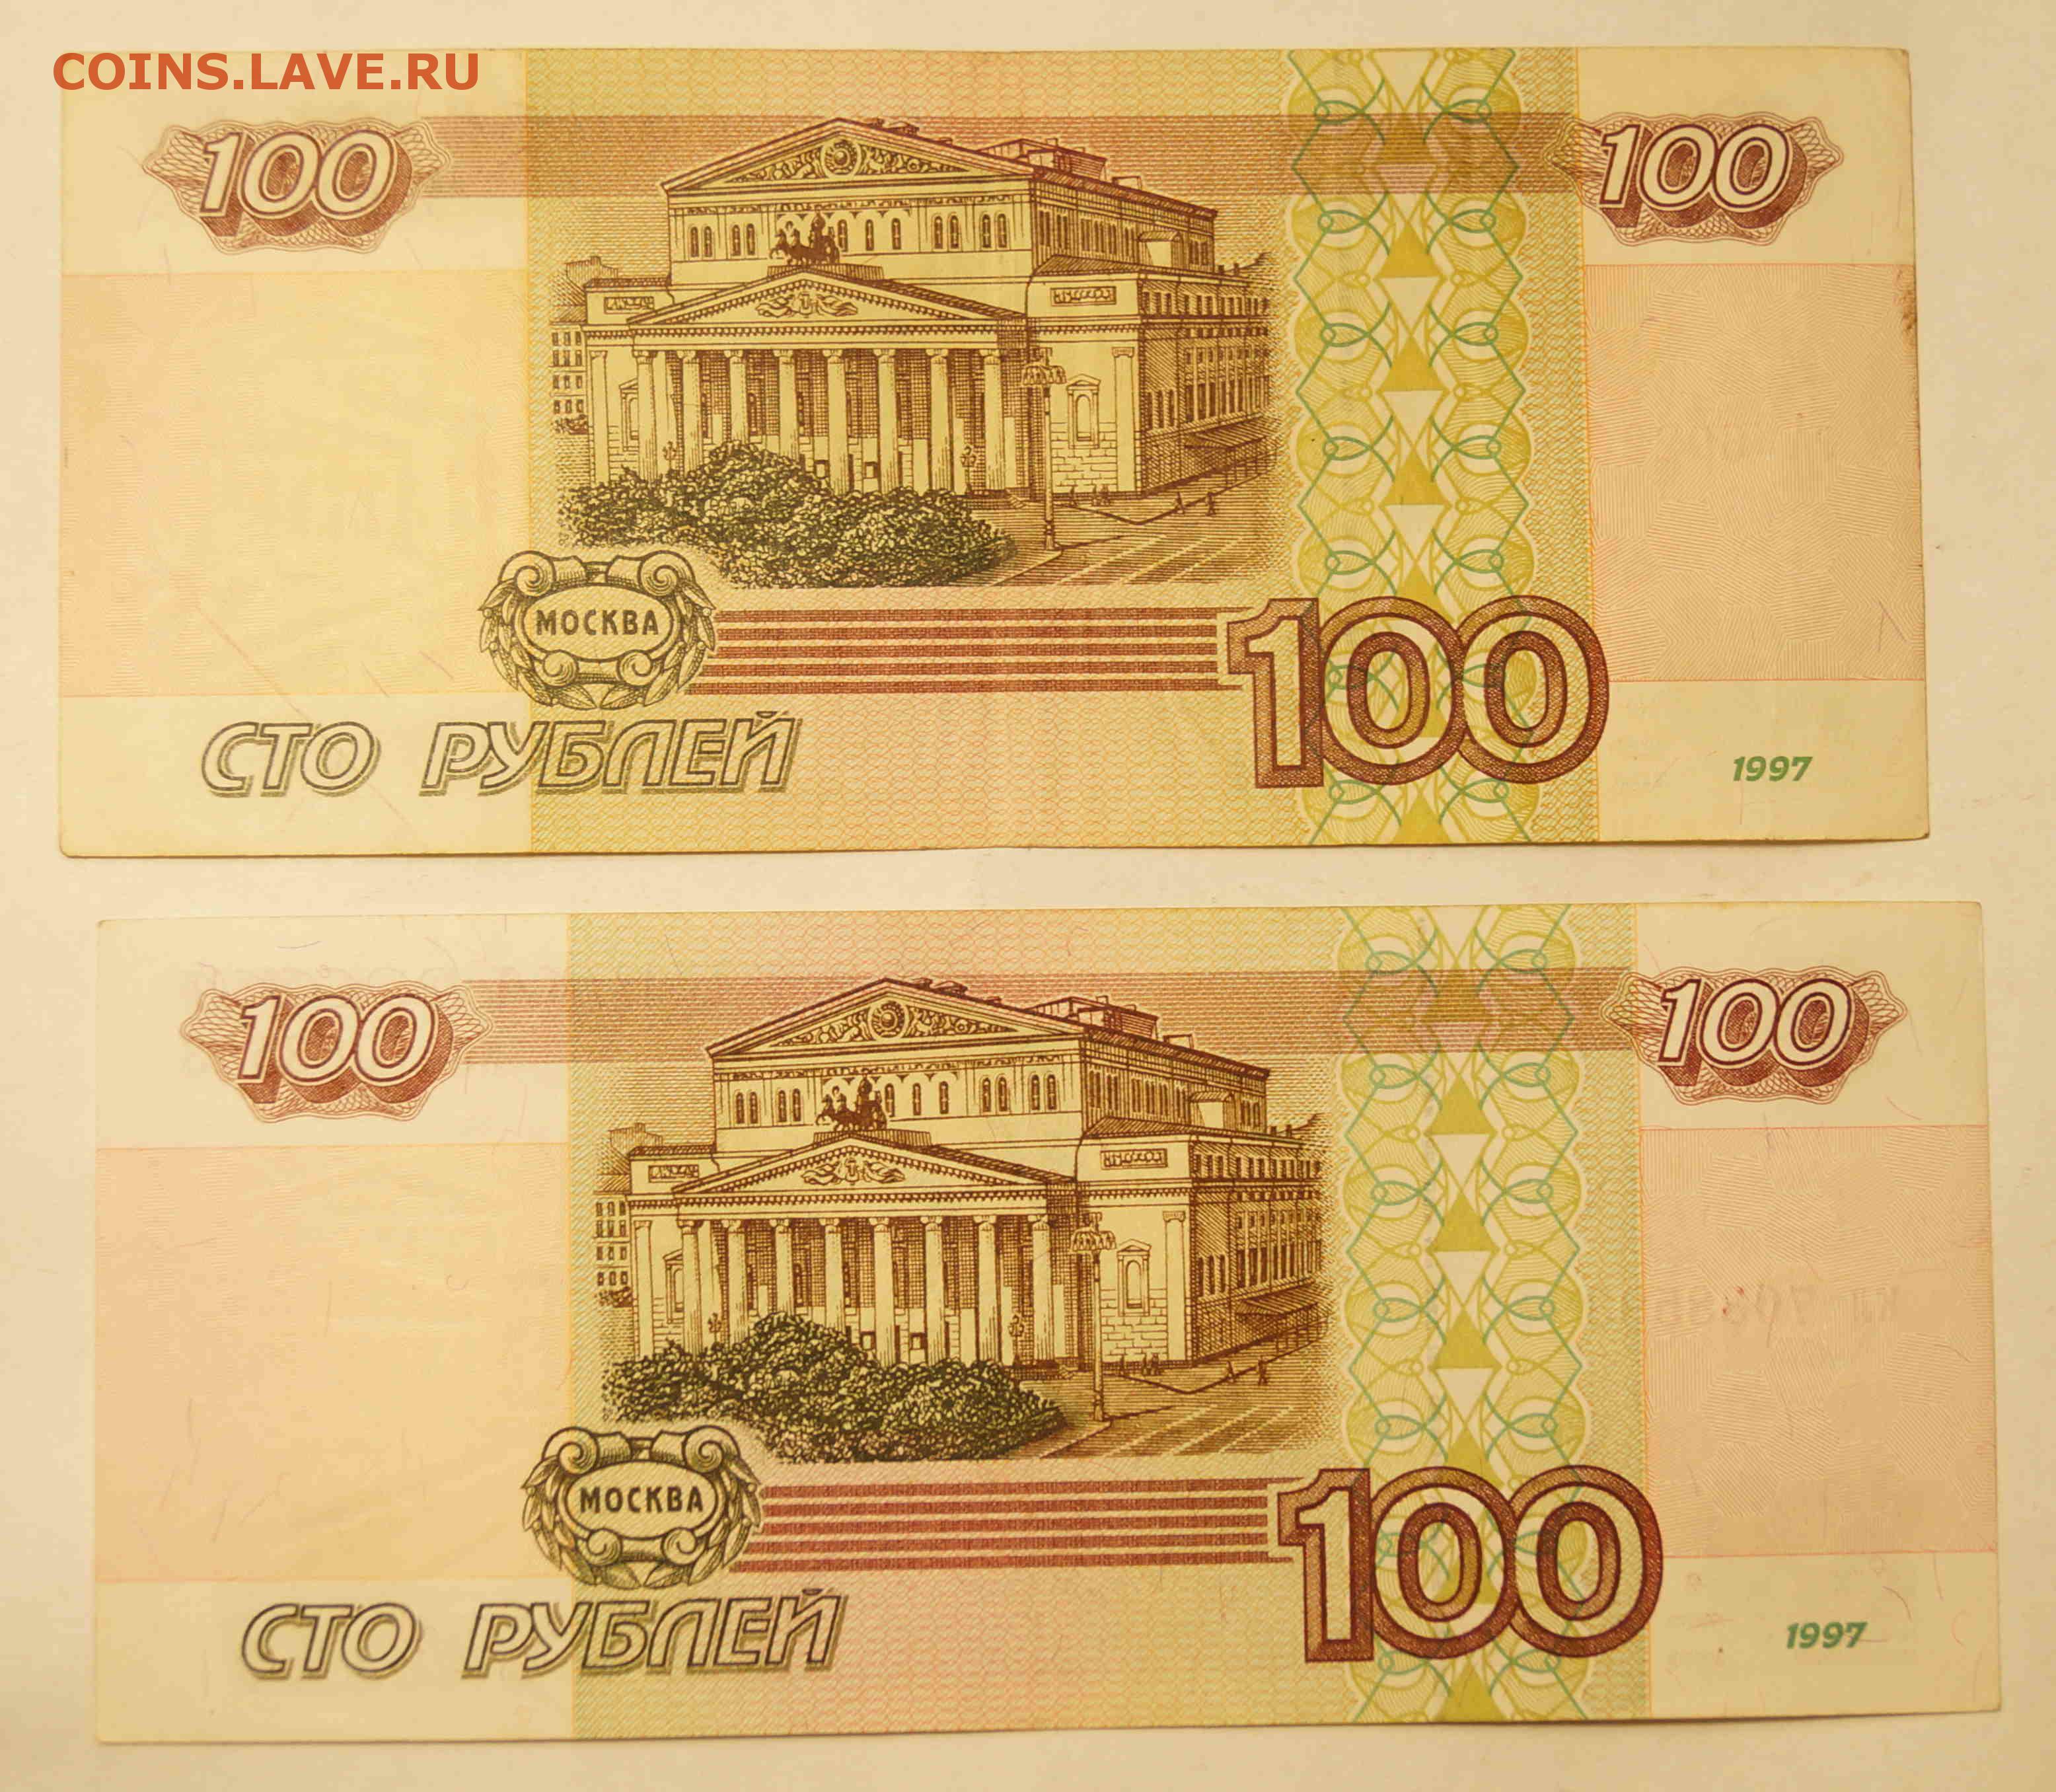 100000 1000 1. Купюра 100 тысяч рублей 1995. СТО тысяч рублей купюра. 100 000 Рублей 1995 года. Купюра 100.000 руб.